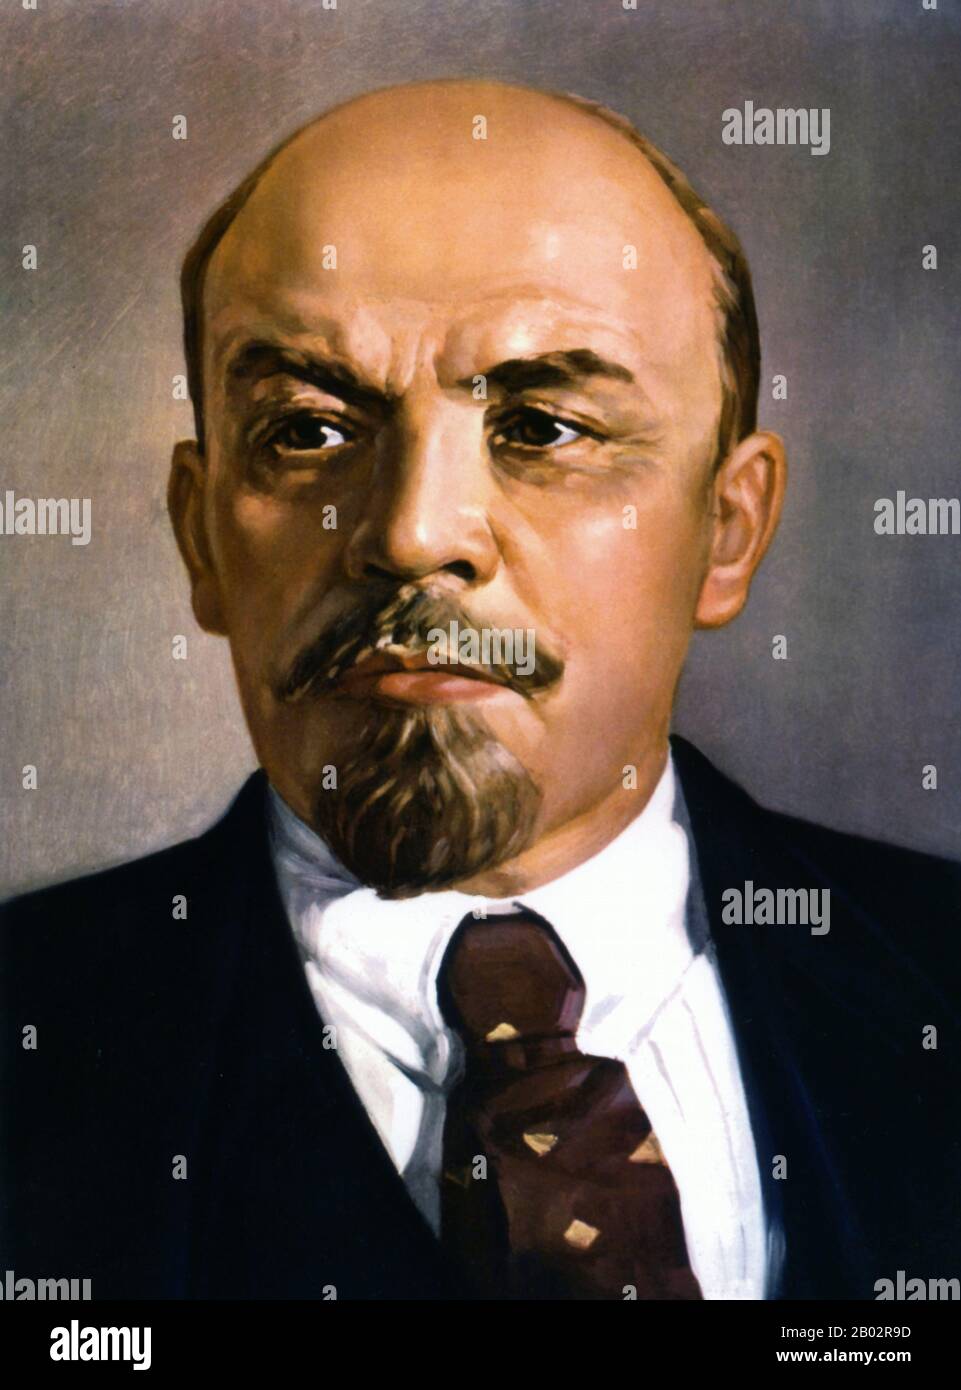 Vladimir Ilyich Lenin, nato Vladimir Ilyich Ulyanov (22 aprile 1870 – 21 gennaio 1924), è stato un . Lenin fu il capo della Repubblica socialista federativa sovietica russa dal 1917, e poi contemporaneamente come Premier dell'Unione Sovietica dal 1922, fino alla sua morte. Sotto la sua amministrazione, l'impero russo si disintegrò e fu sostituito dall'Unione Sovietica, uno stato costituzionalmente socialista monopartitico; tutta la ricchezza, compresi terra, industria e affari, fu nazionalizzata. Basato nel marxismo, i suoi contributi teorici a ma Foto Stock